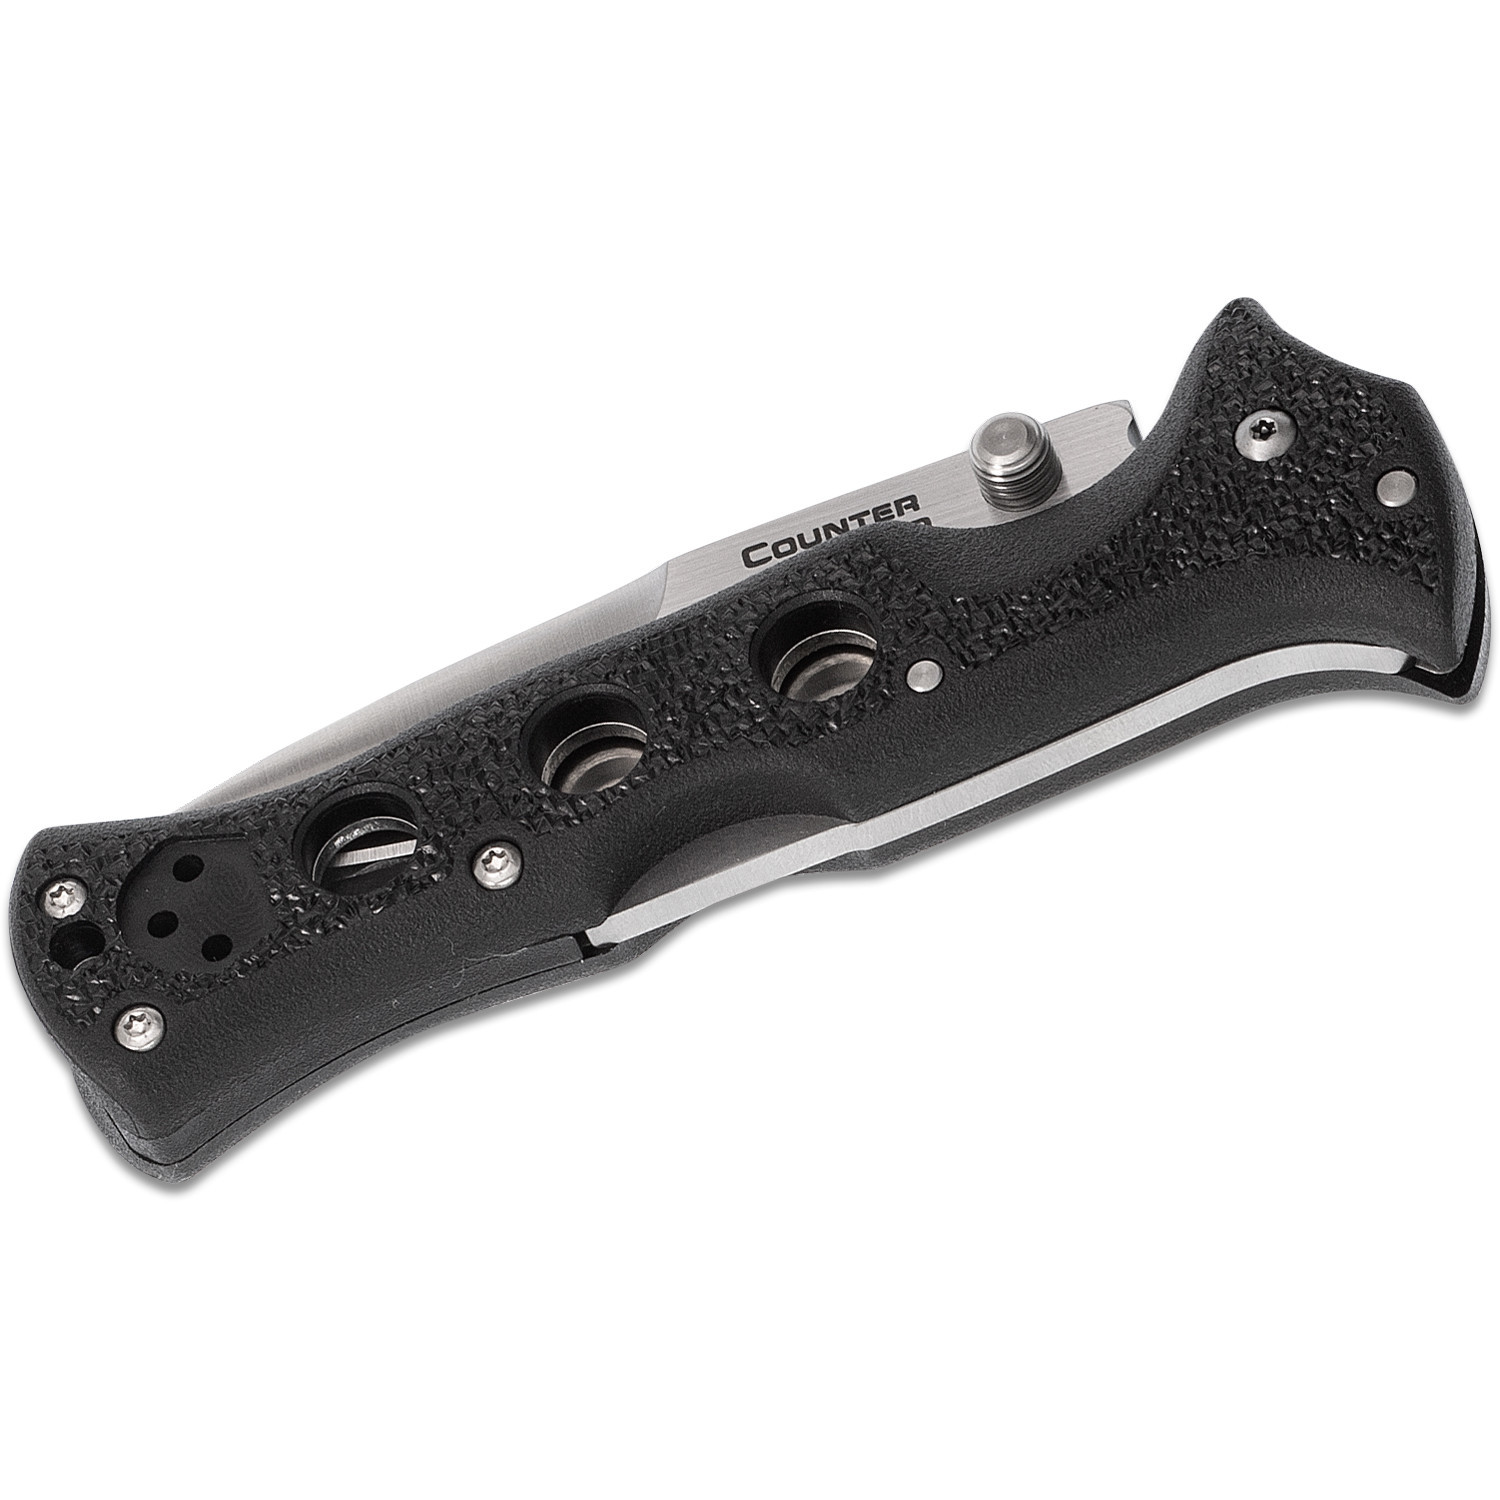 Складной нож Counter Point II - Cold Steel 10ACNC, сталь 440C, рукоять Grivory® (высококачественный полимер) черная - фото 3